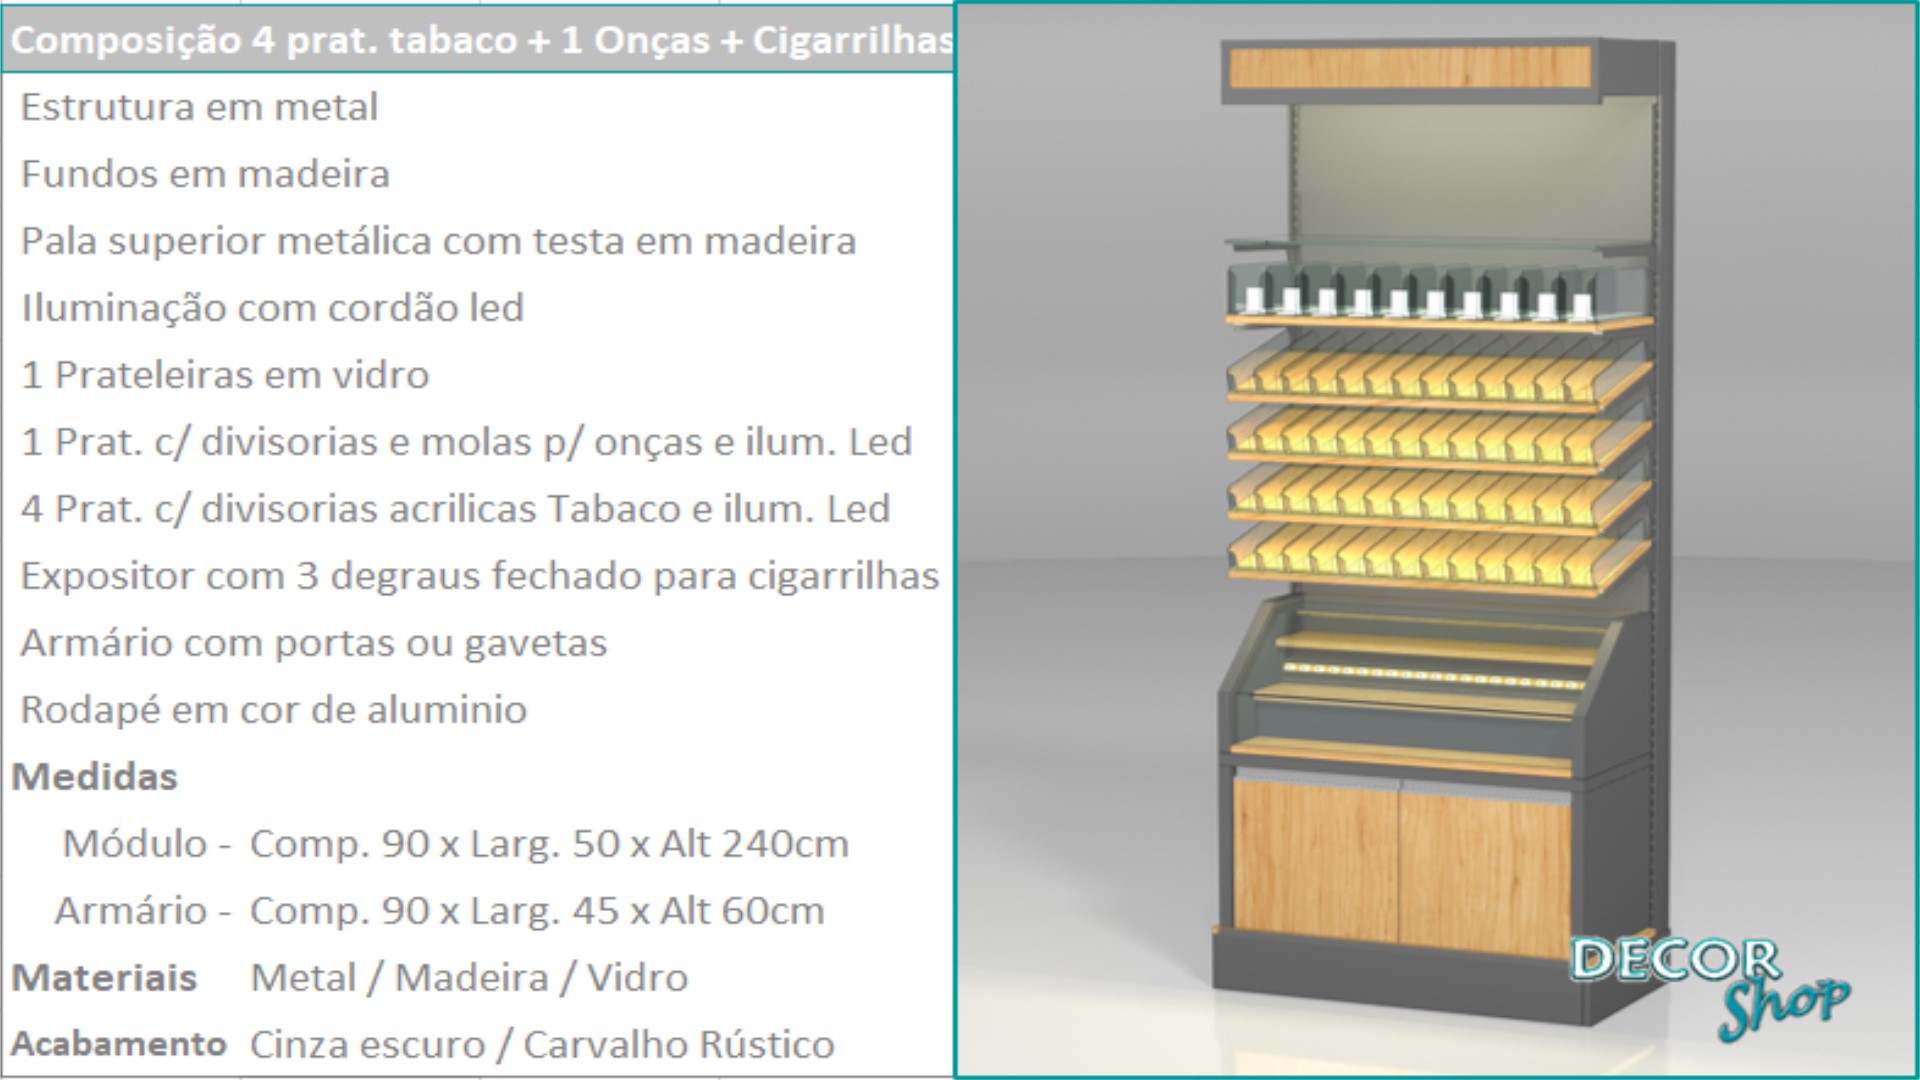 9 - Mod 4 prateleiras tabaco onças cigarrilhas